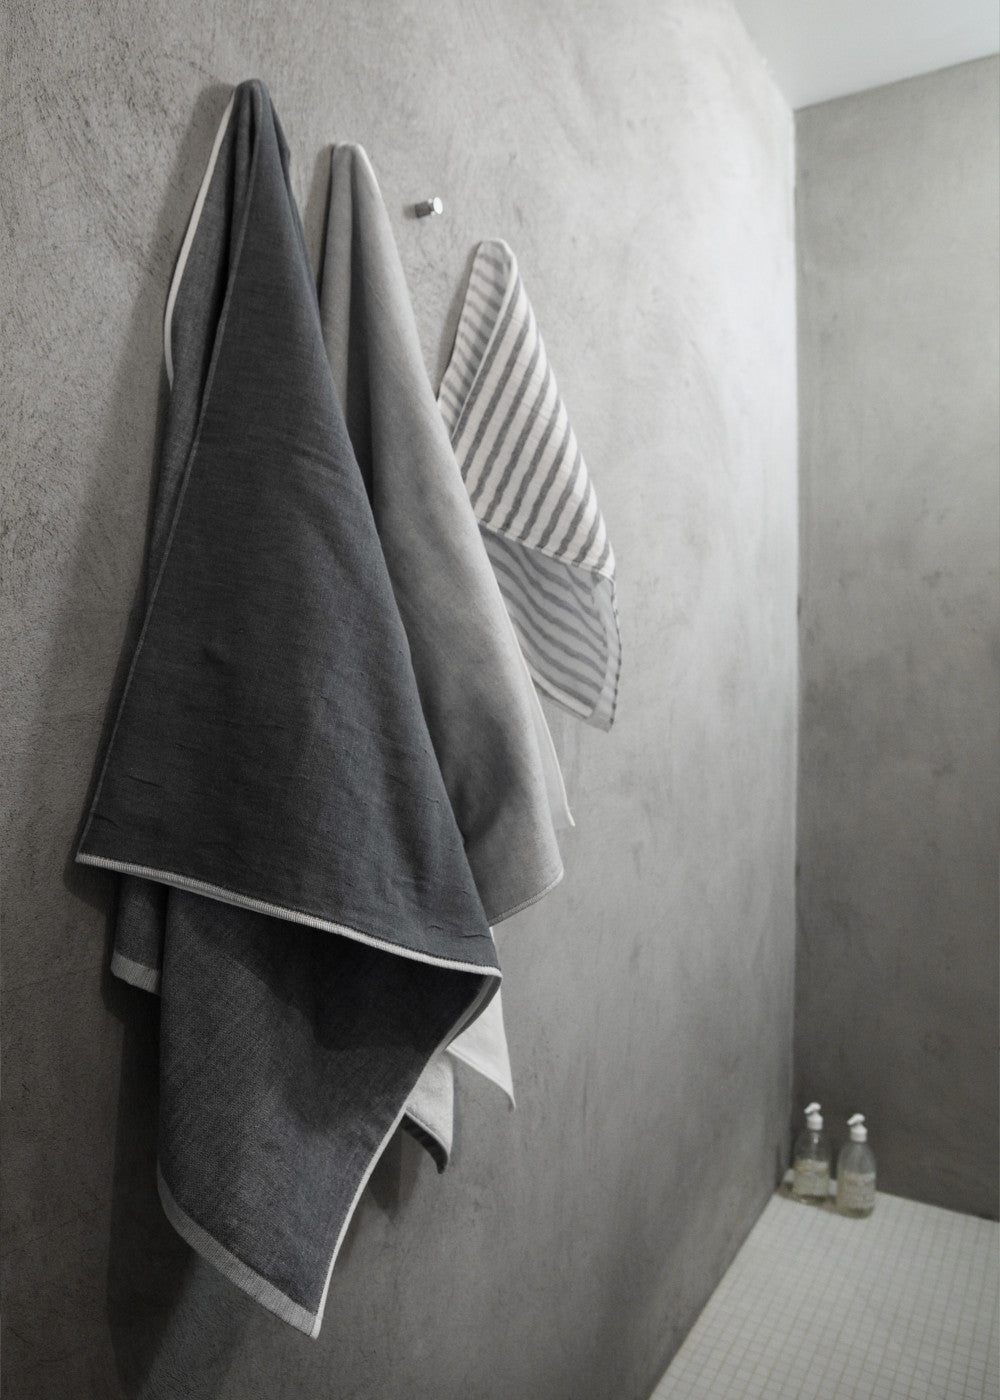 5 Trees 2 Tone Chambray Bath Towel - Gray & Dark Gray